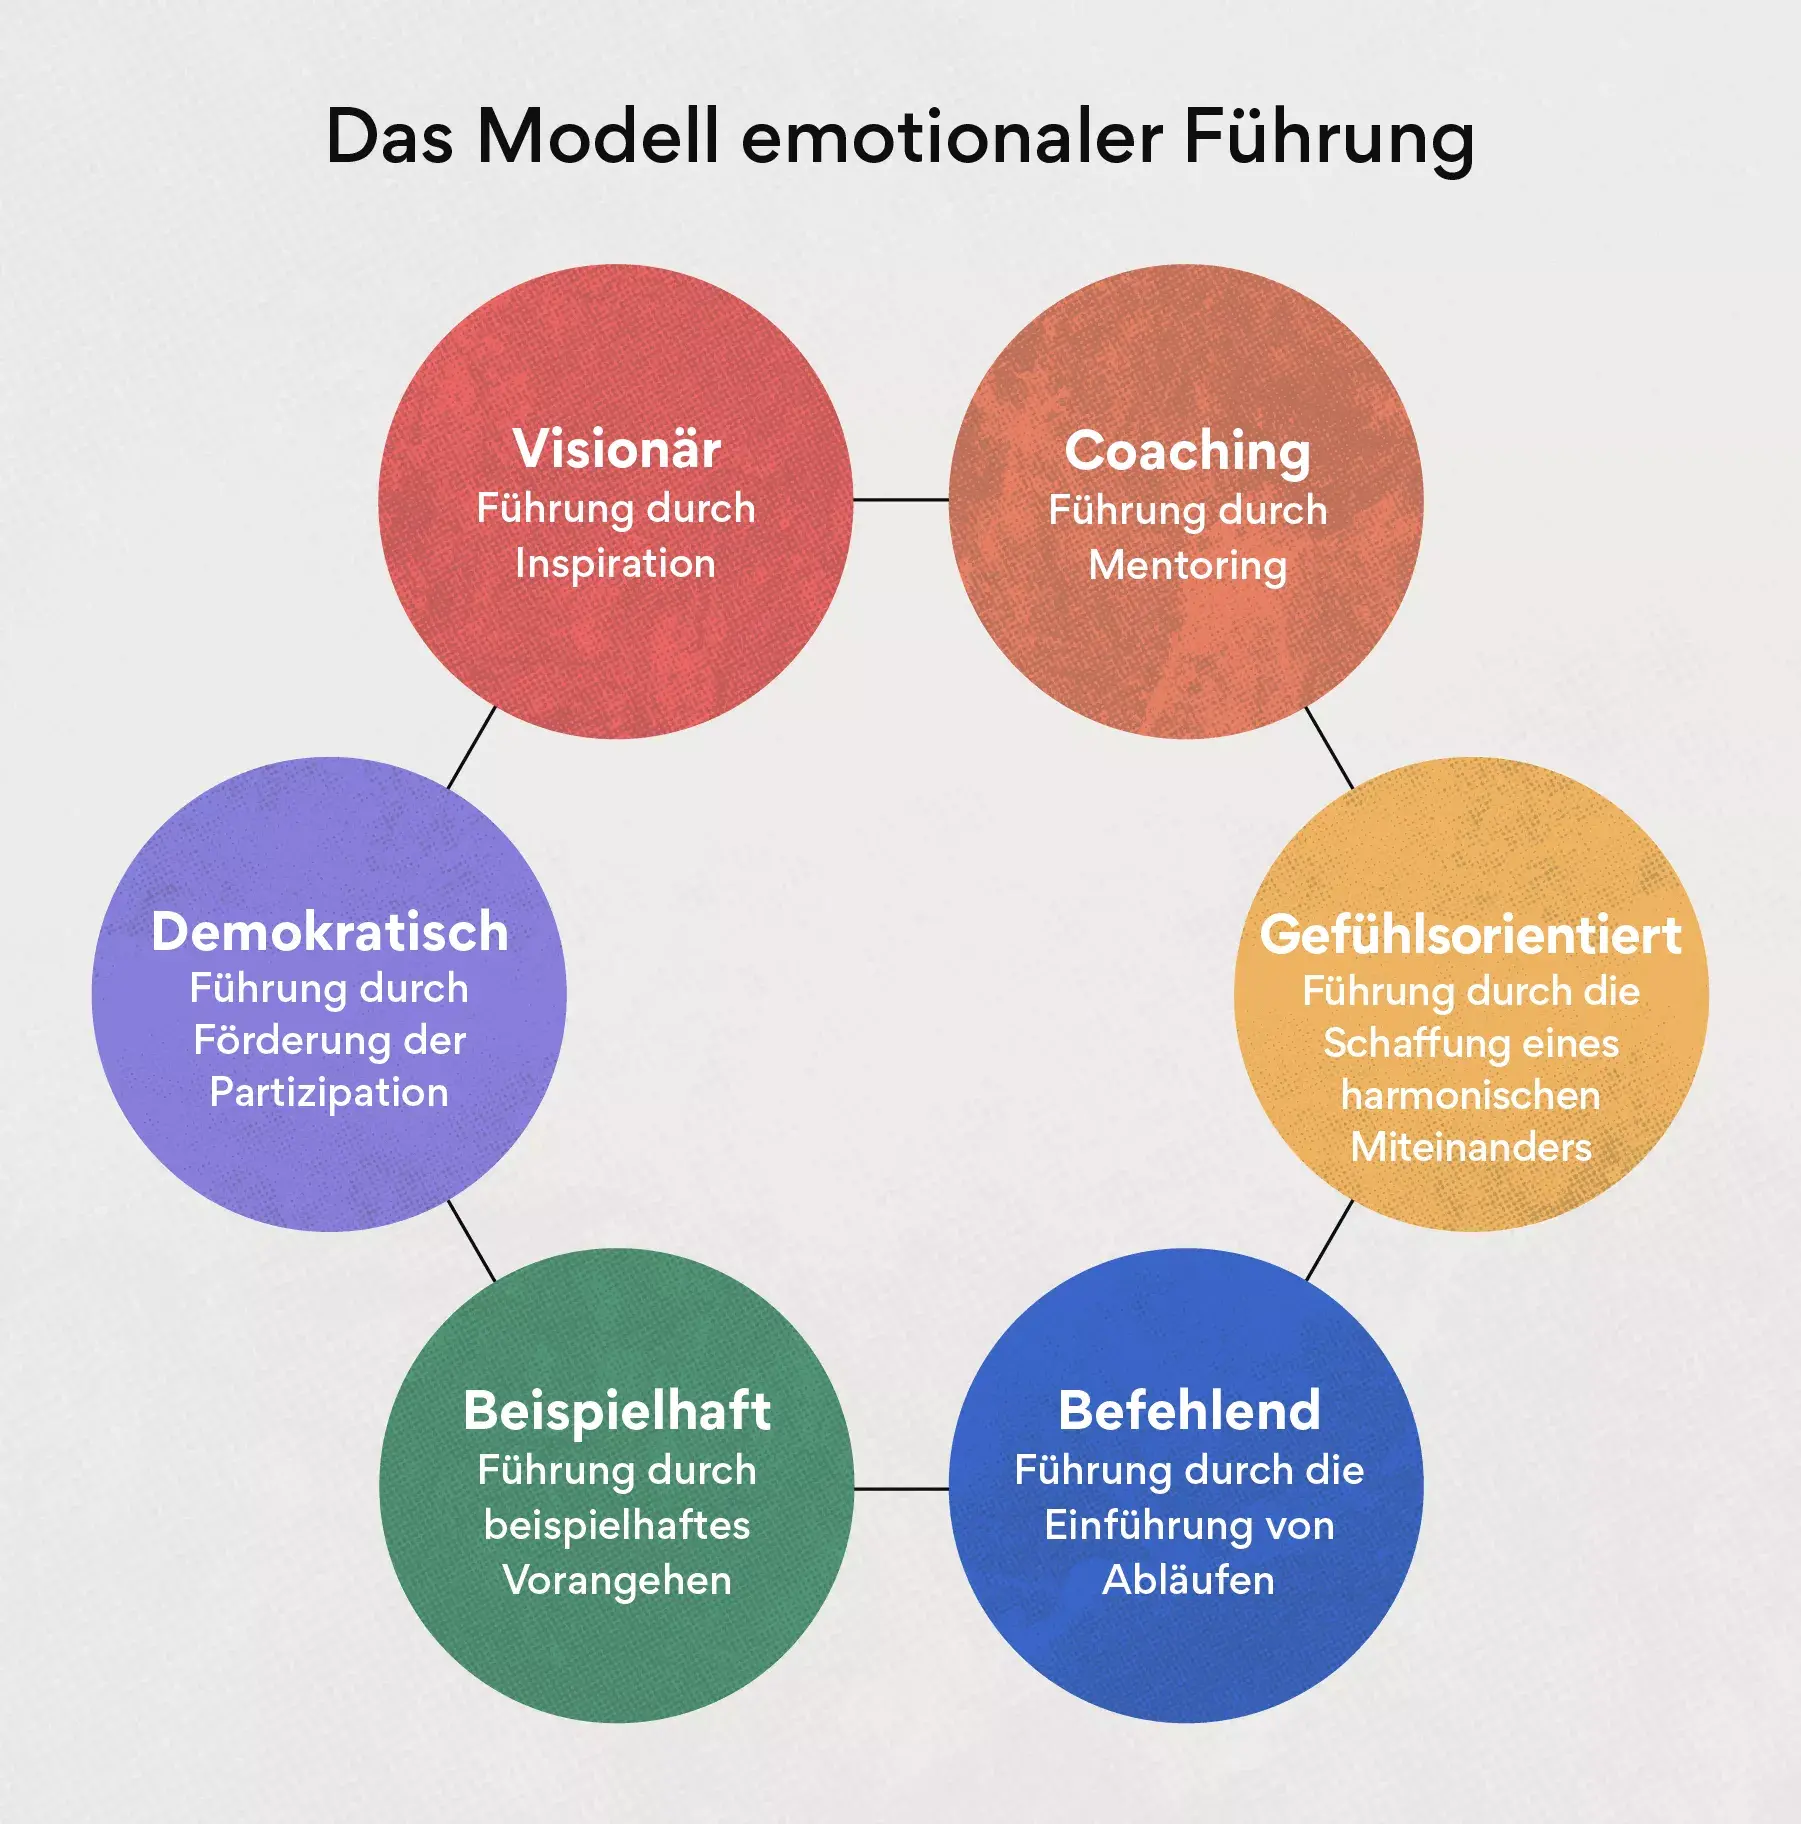 Das Modell emotionaler Führung